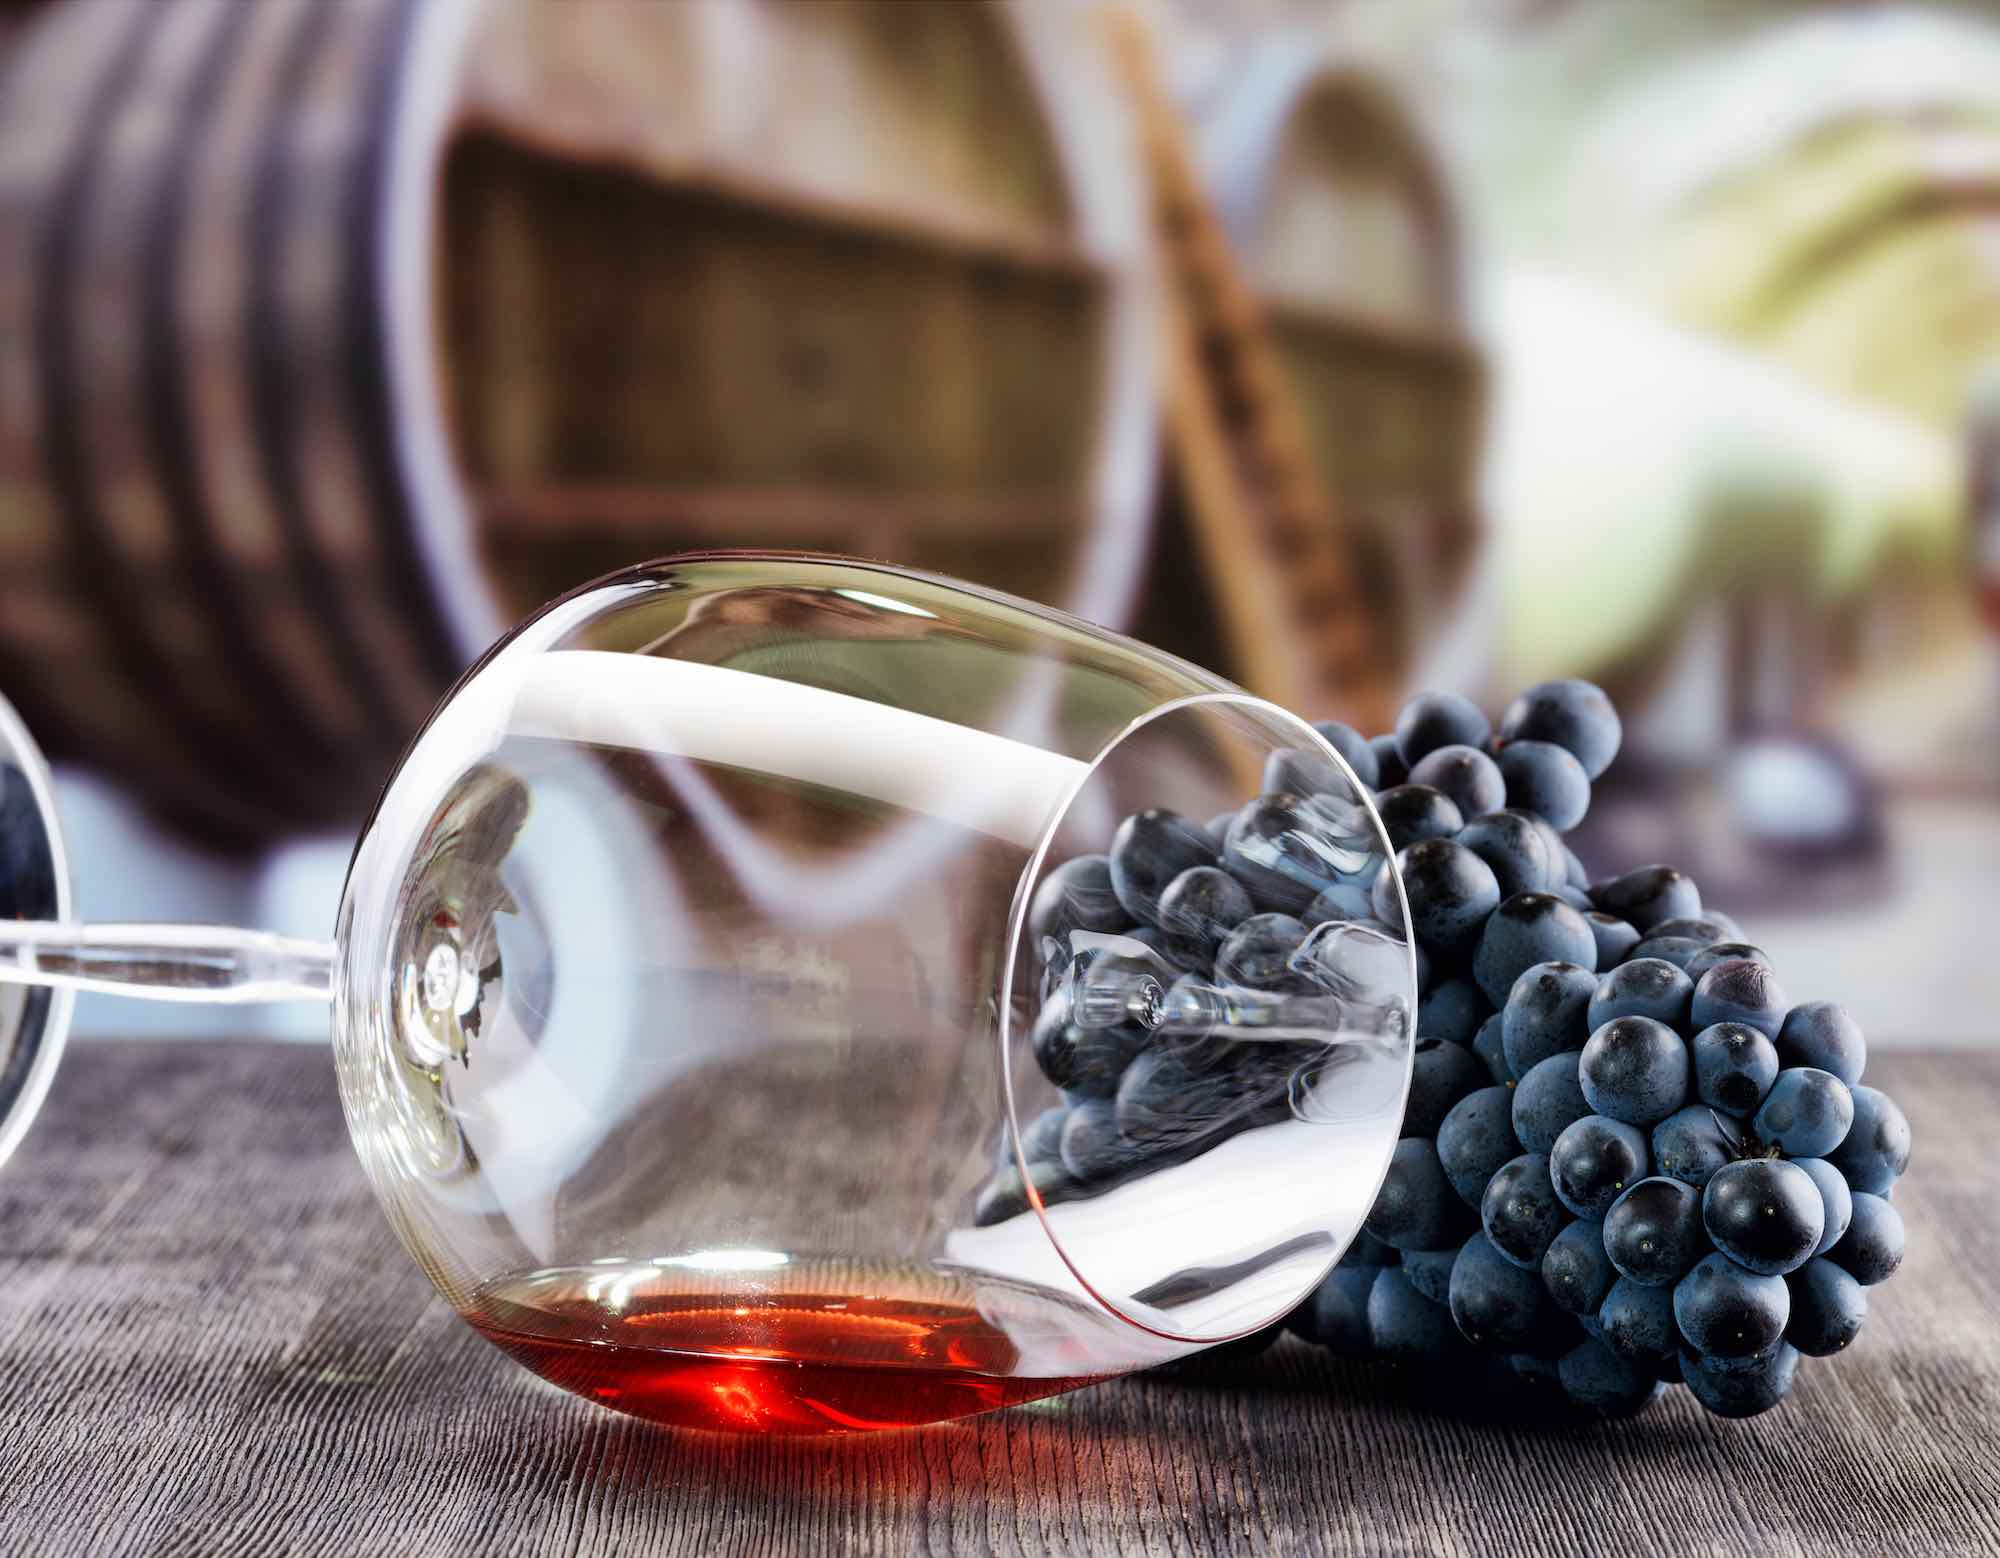 Grappolo d'uva e bicchiere di vino rosso appoggiati su un tavolo di legno nero sullo sfondo di una cantina con botti